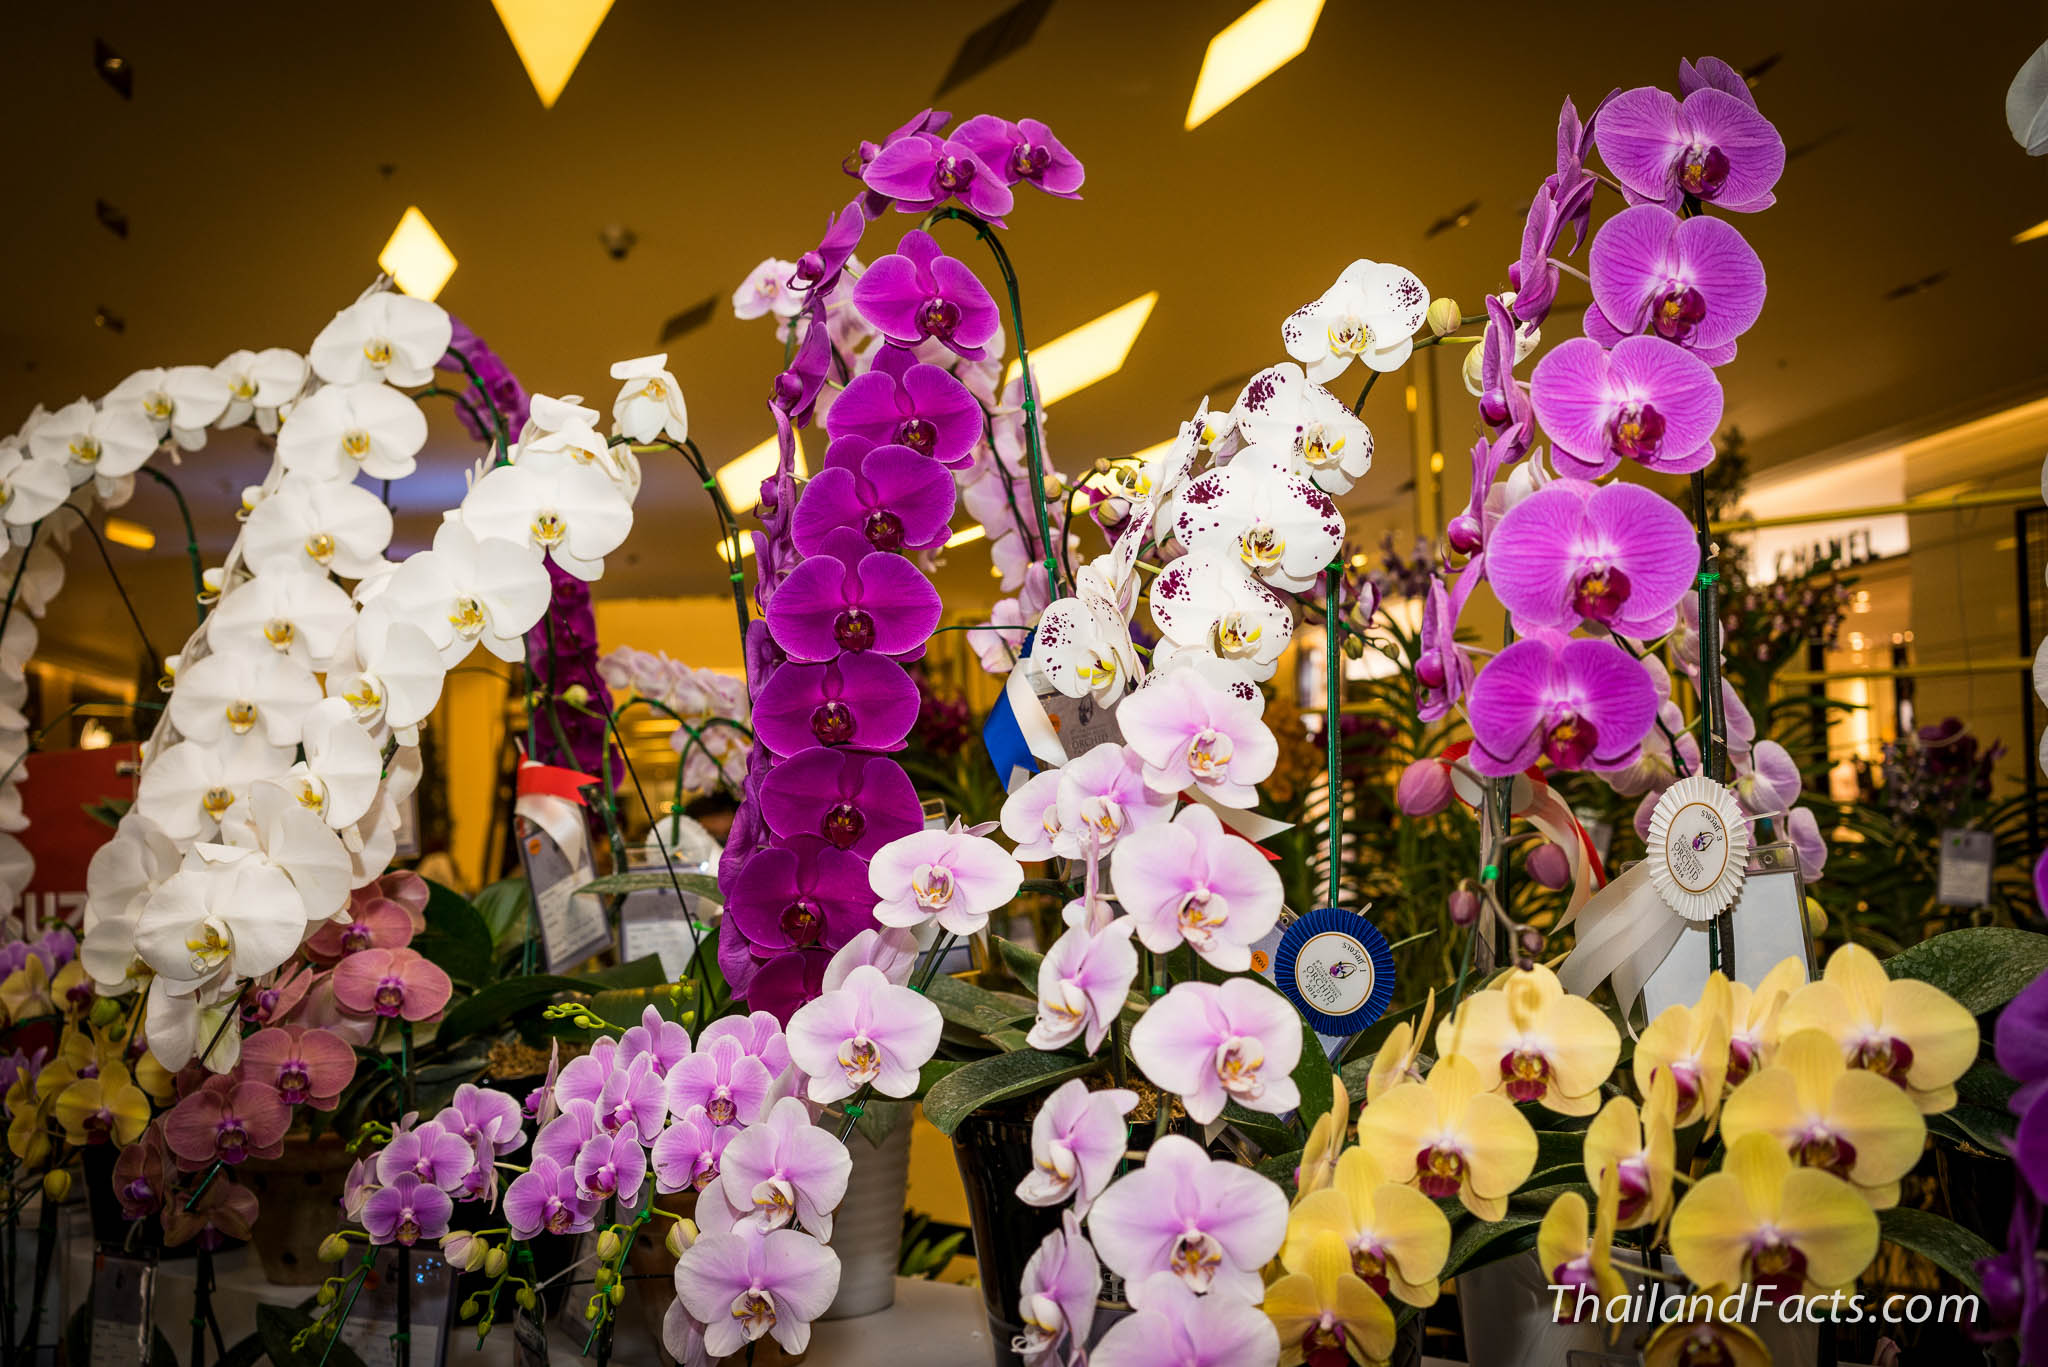 Royal-Orchid-Paradise-2014-8th-Siam-Paragon-Bangkok-60